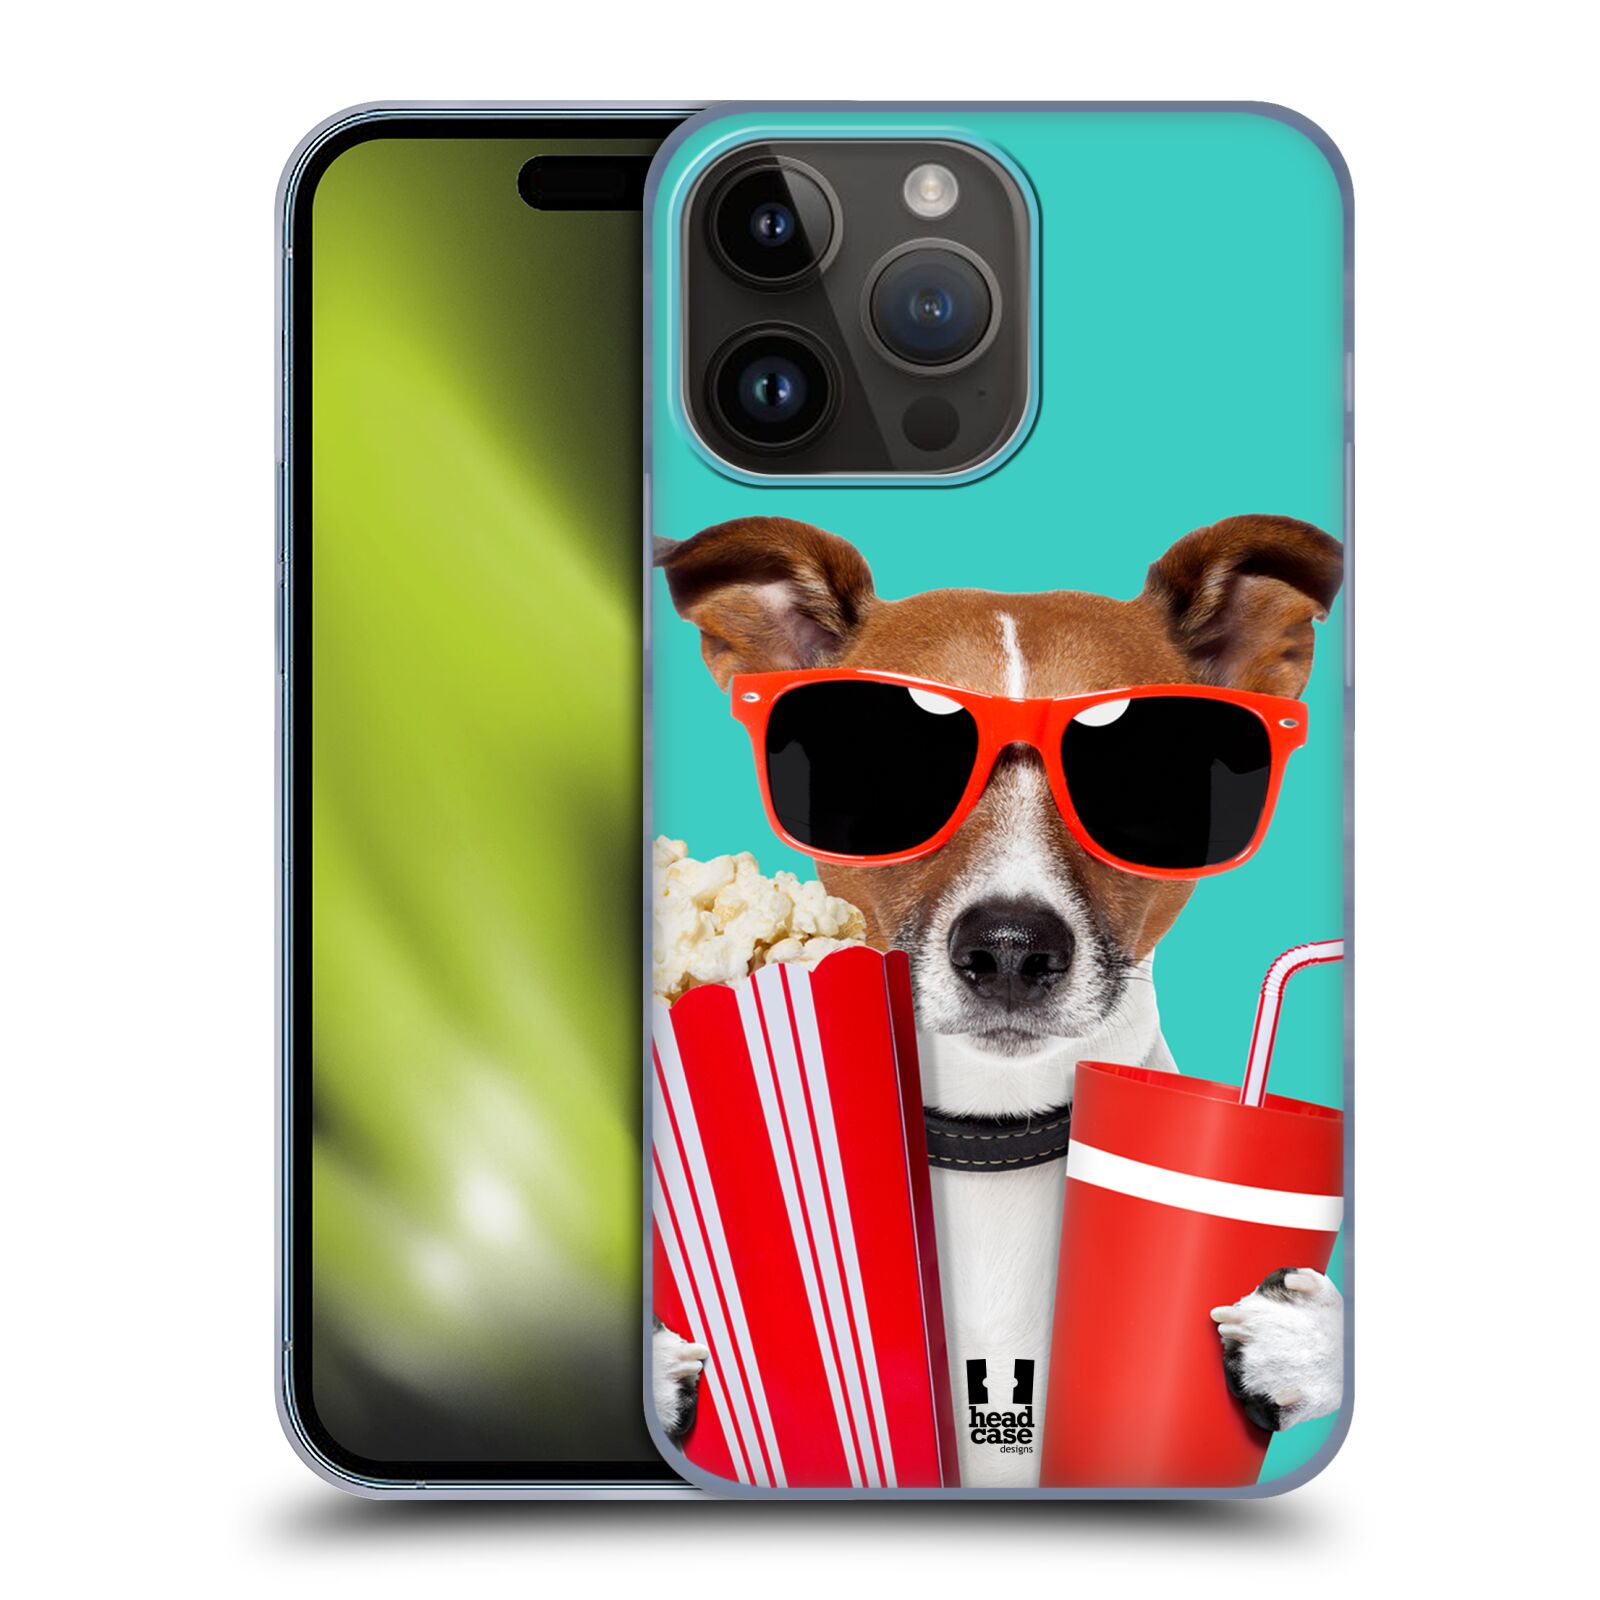 Plastový obal HEAD CASE na mobil Apple Iphone 15 PRO MAX vzor Legrační zvířátka pejsek v kině s popkornem